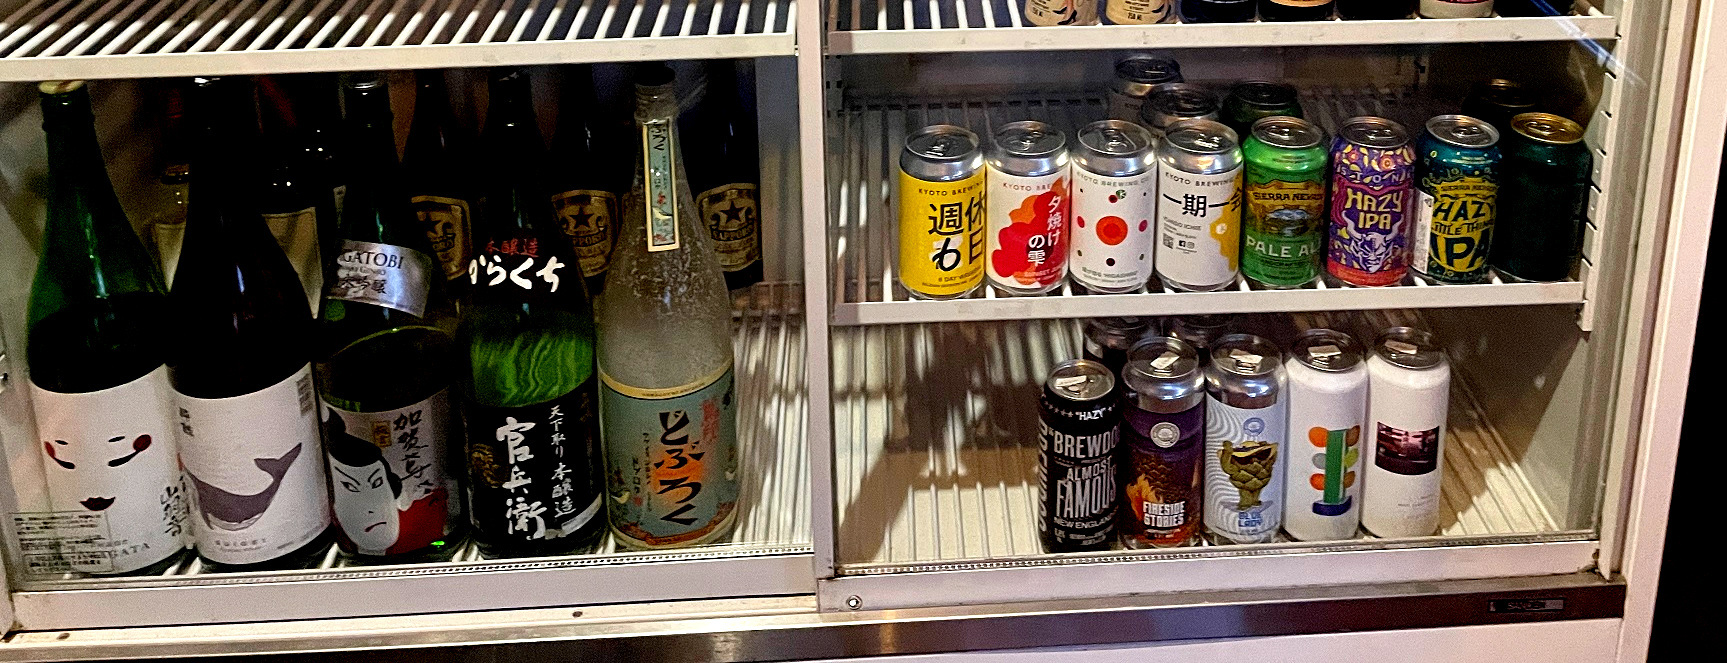 各地のブルワリーから仕入れたクラフトビールの他にも日本酒やワインもあります。